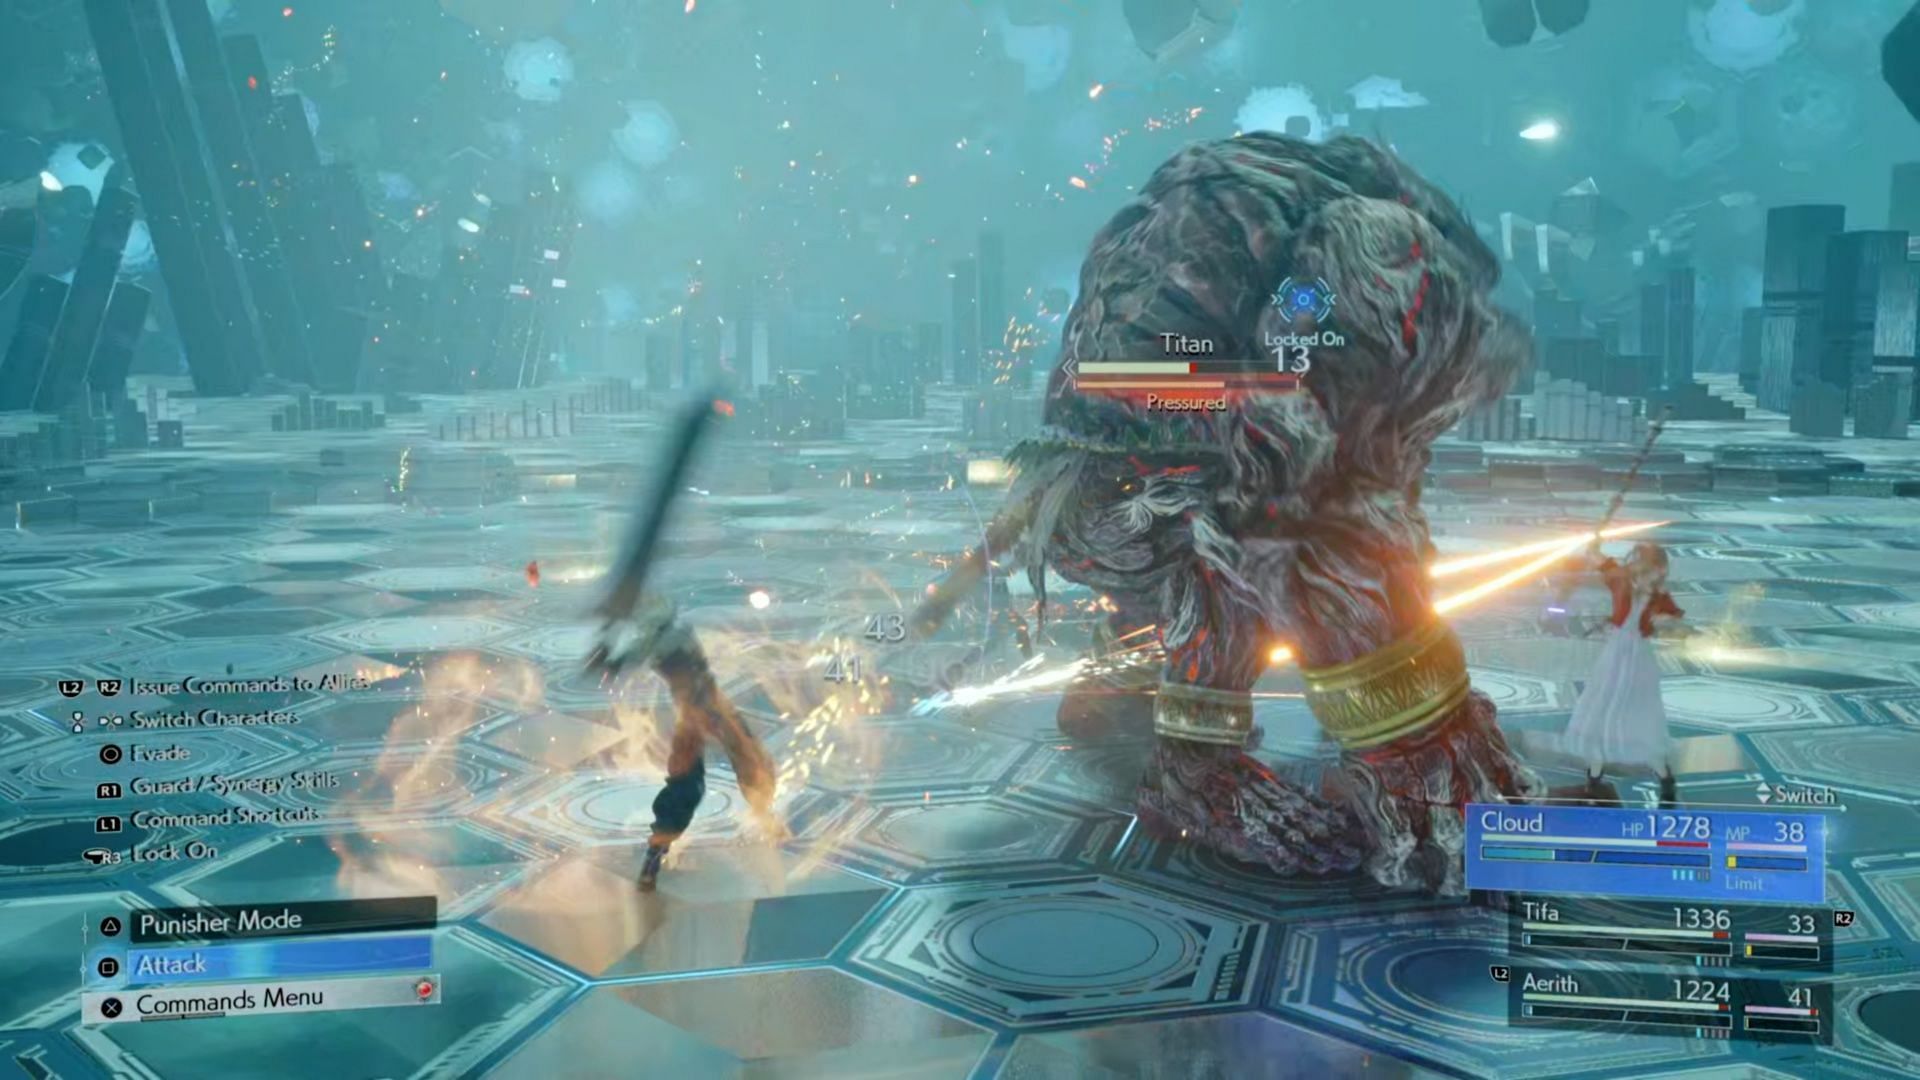 When Titan uses a powerful attack, interrupt it to Pressure him (Image via Square Enix)